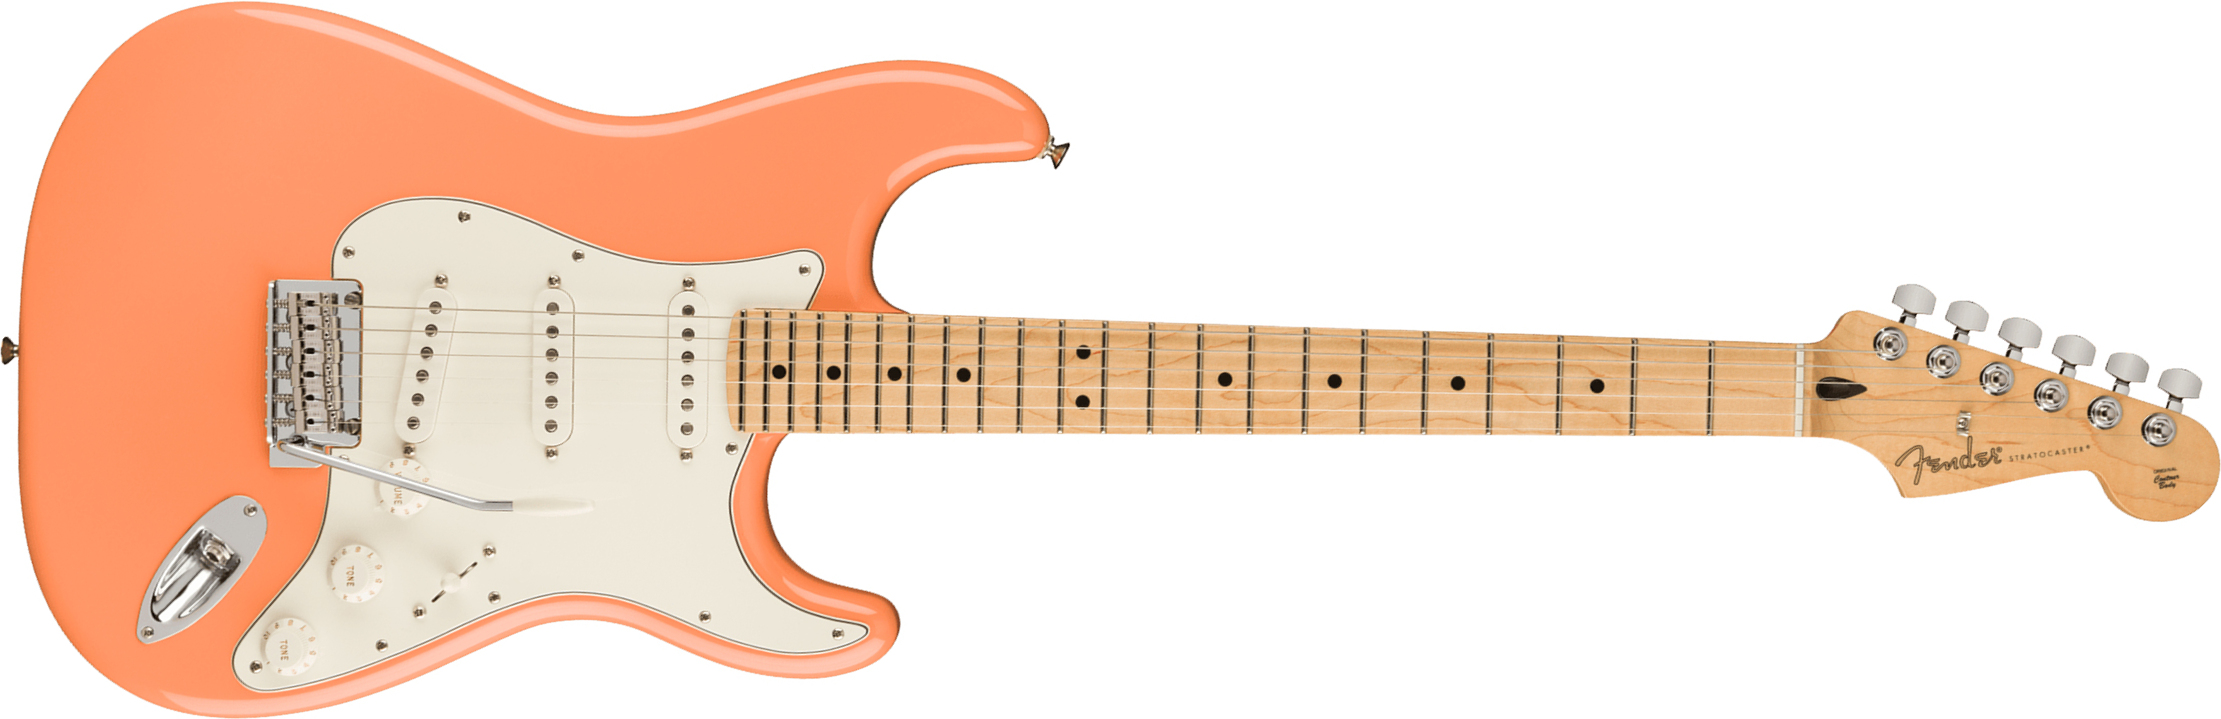 Fender Strat Player Ltd Mex 3s Trem Mn - Pacific Peach - Guitarra eléctrica con forma de str. - Main picture